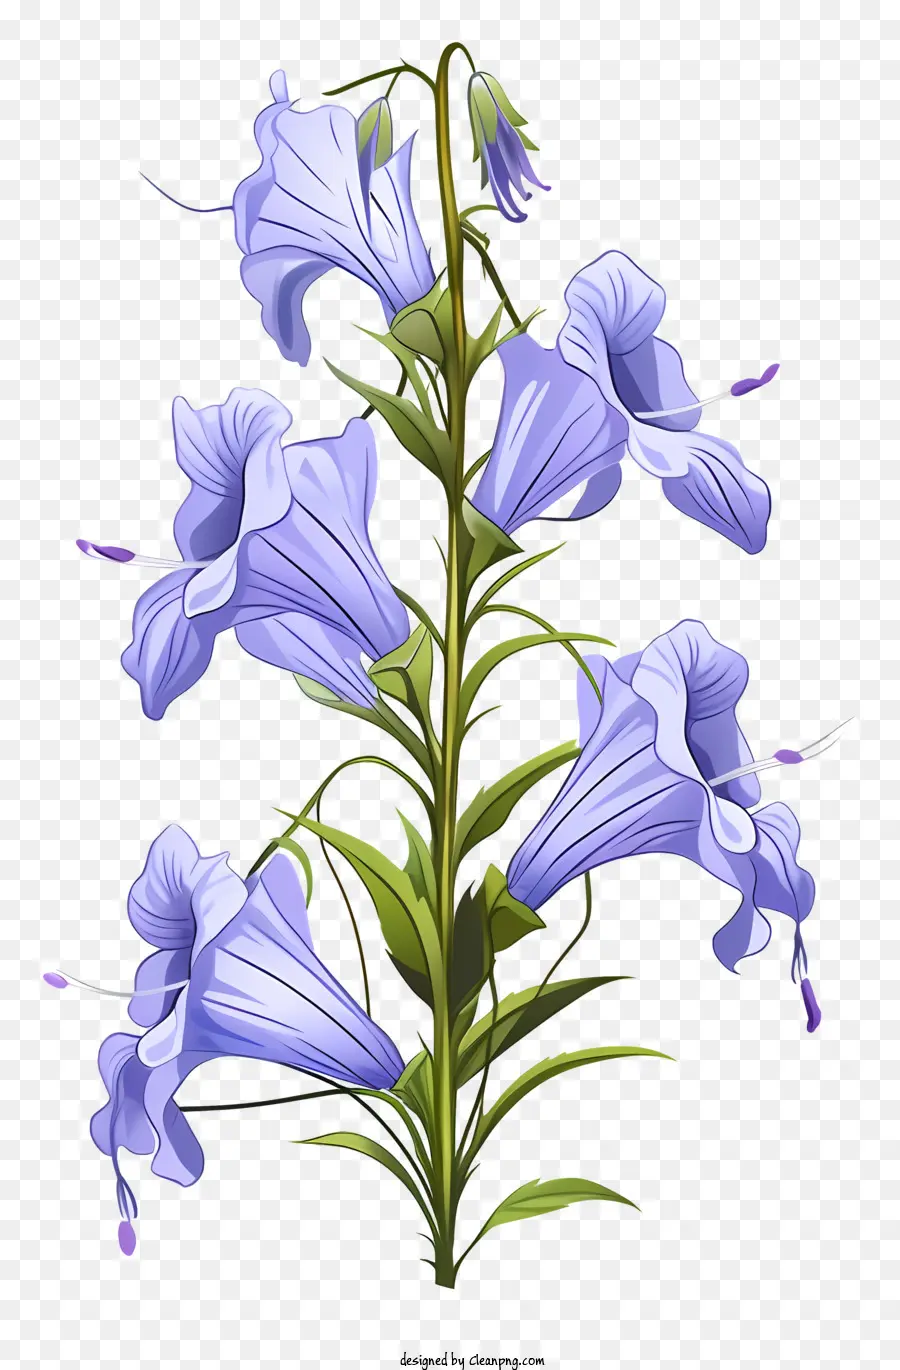 Bluebell Wildflower Flower Blue Cánh hoa màu xanh lá cây màu xanh lá cây - Hình ảnh thực tế của hoa bluebell với cánh hoa màu xanh